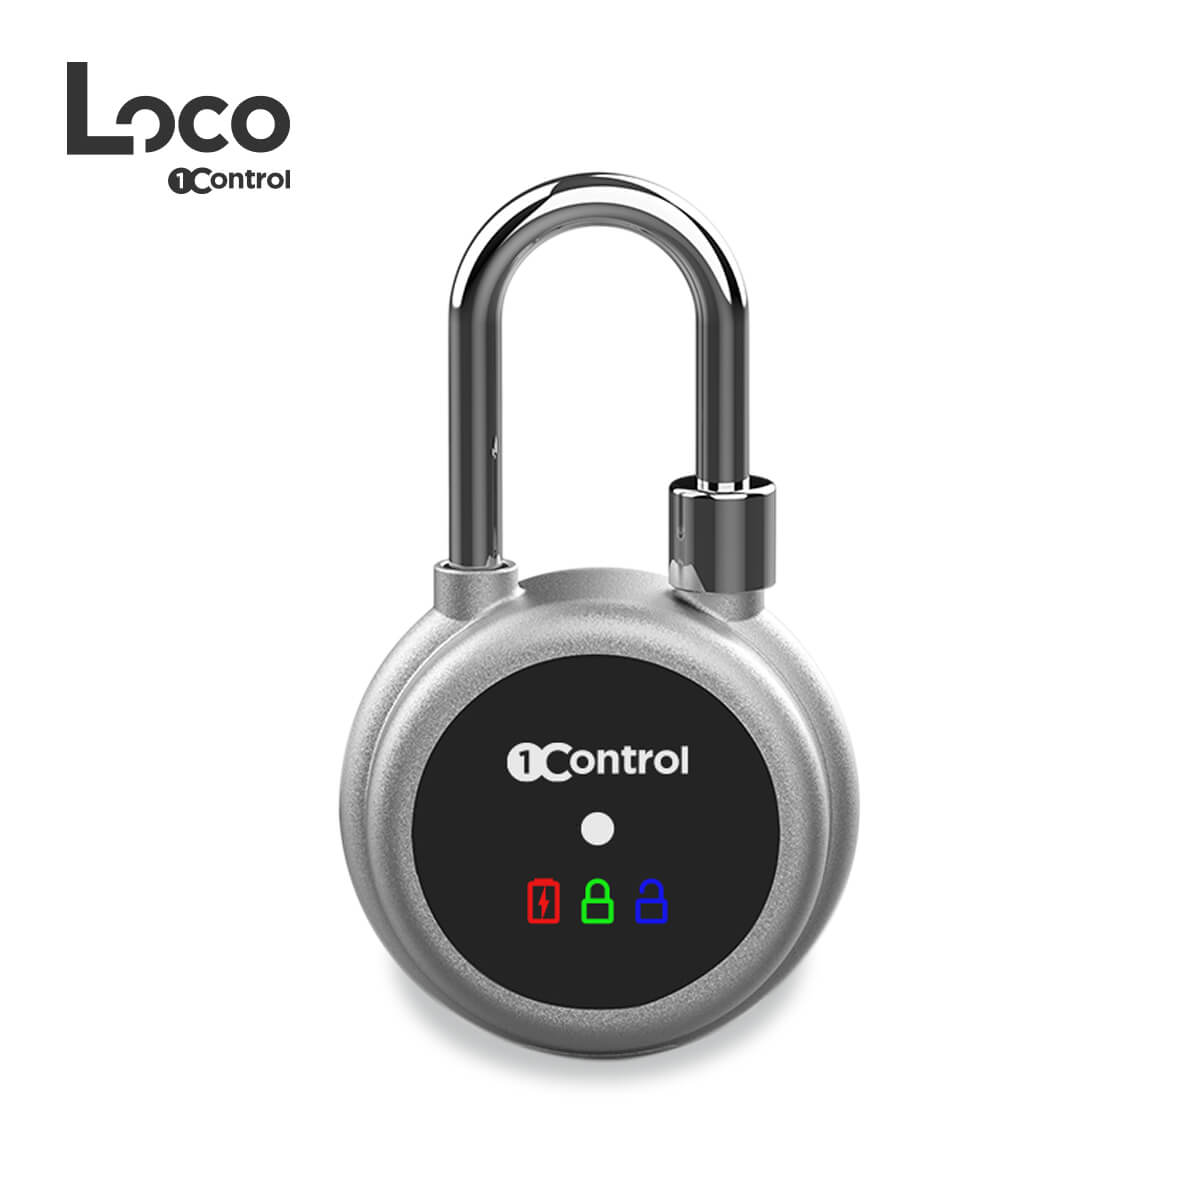 Lucchetto smart elettronico 1Control LOCO